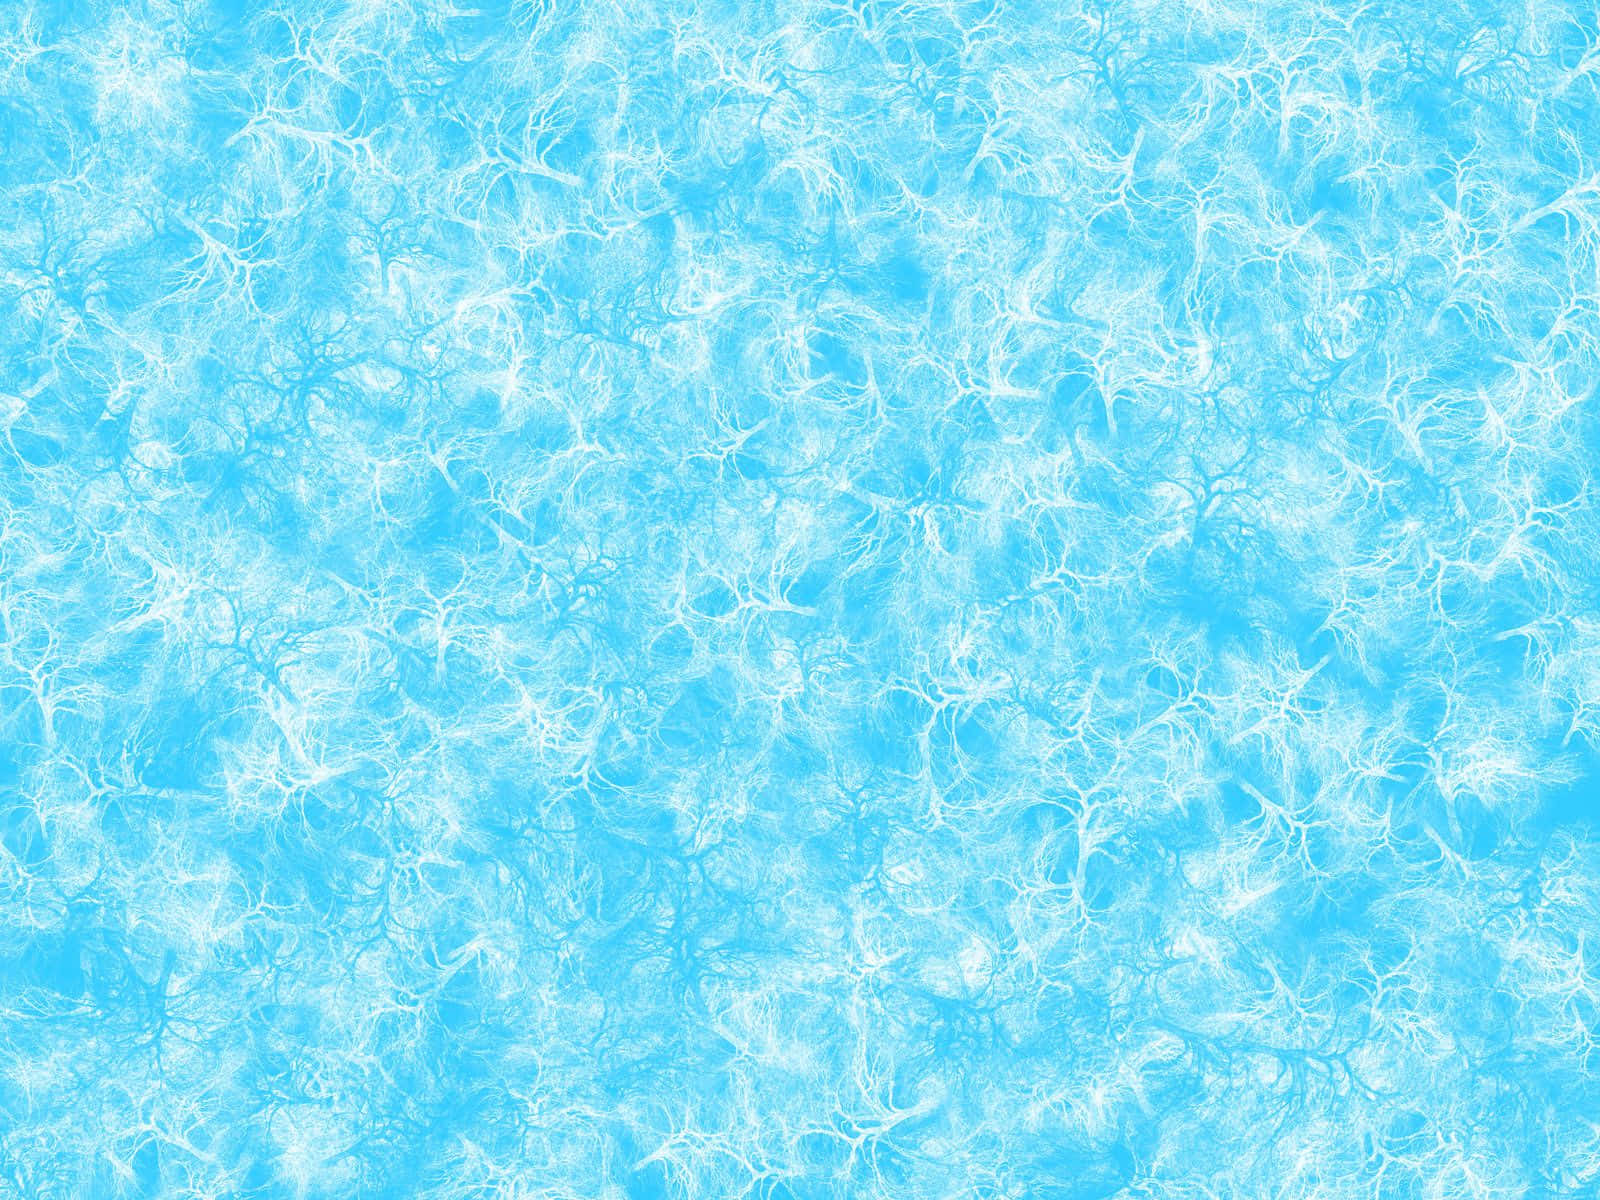 Imágenesde Textura De Agua Azul